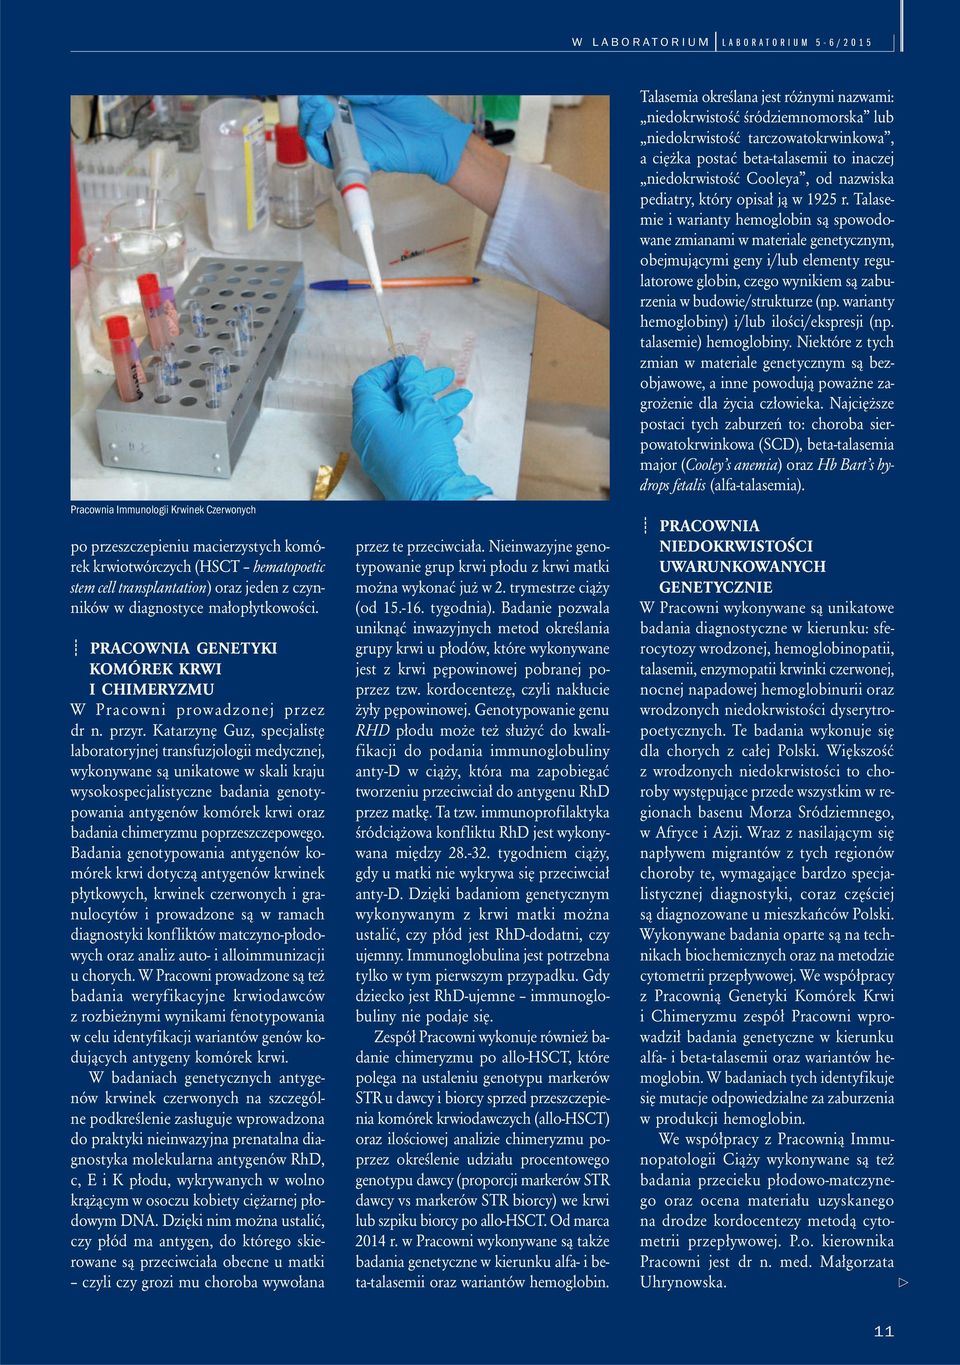 Katarzynę Guz, specjalistę laboratoryjnej transfuzjologii medycznej, wykonywane są unikatowe w skali kraju wysokospecjalistyczne badania genotypowania antygenów komórek krwi oraz badania chimeryzmu